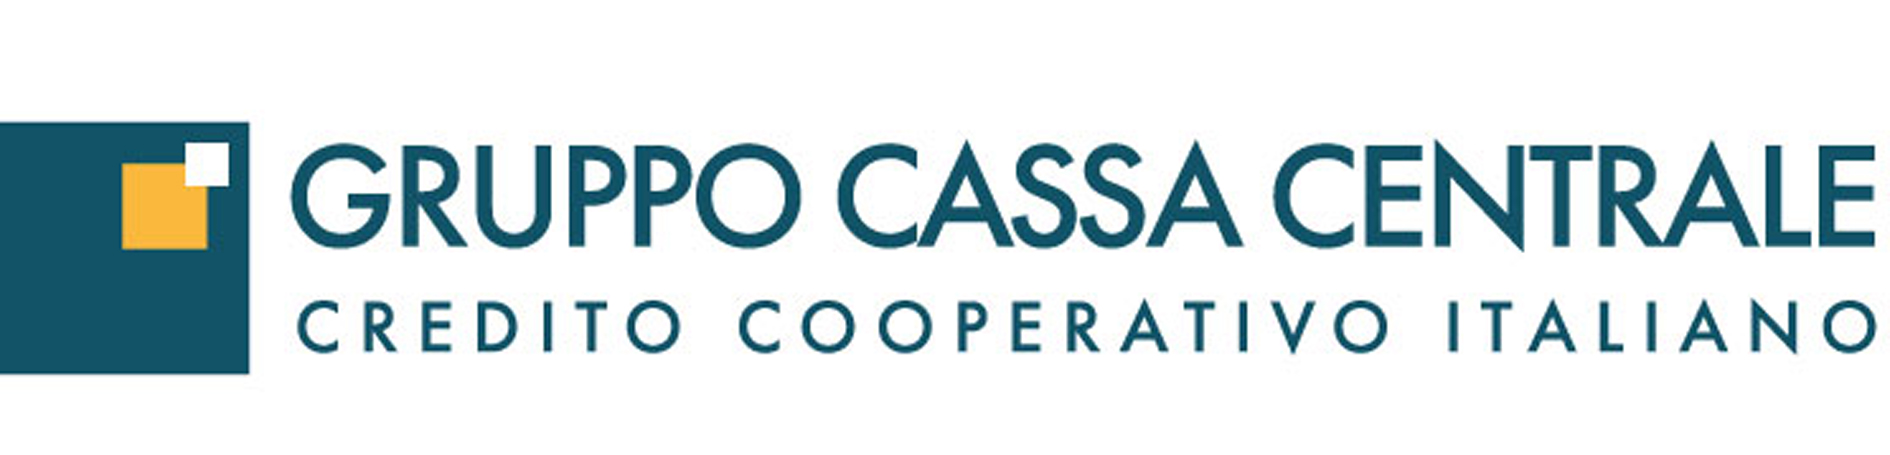 Il Gruppo Cassa Centrale Banca vara il piano strategico 2022-2025